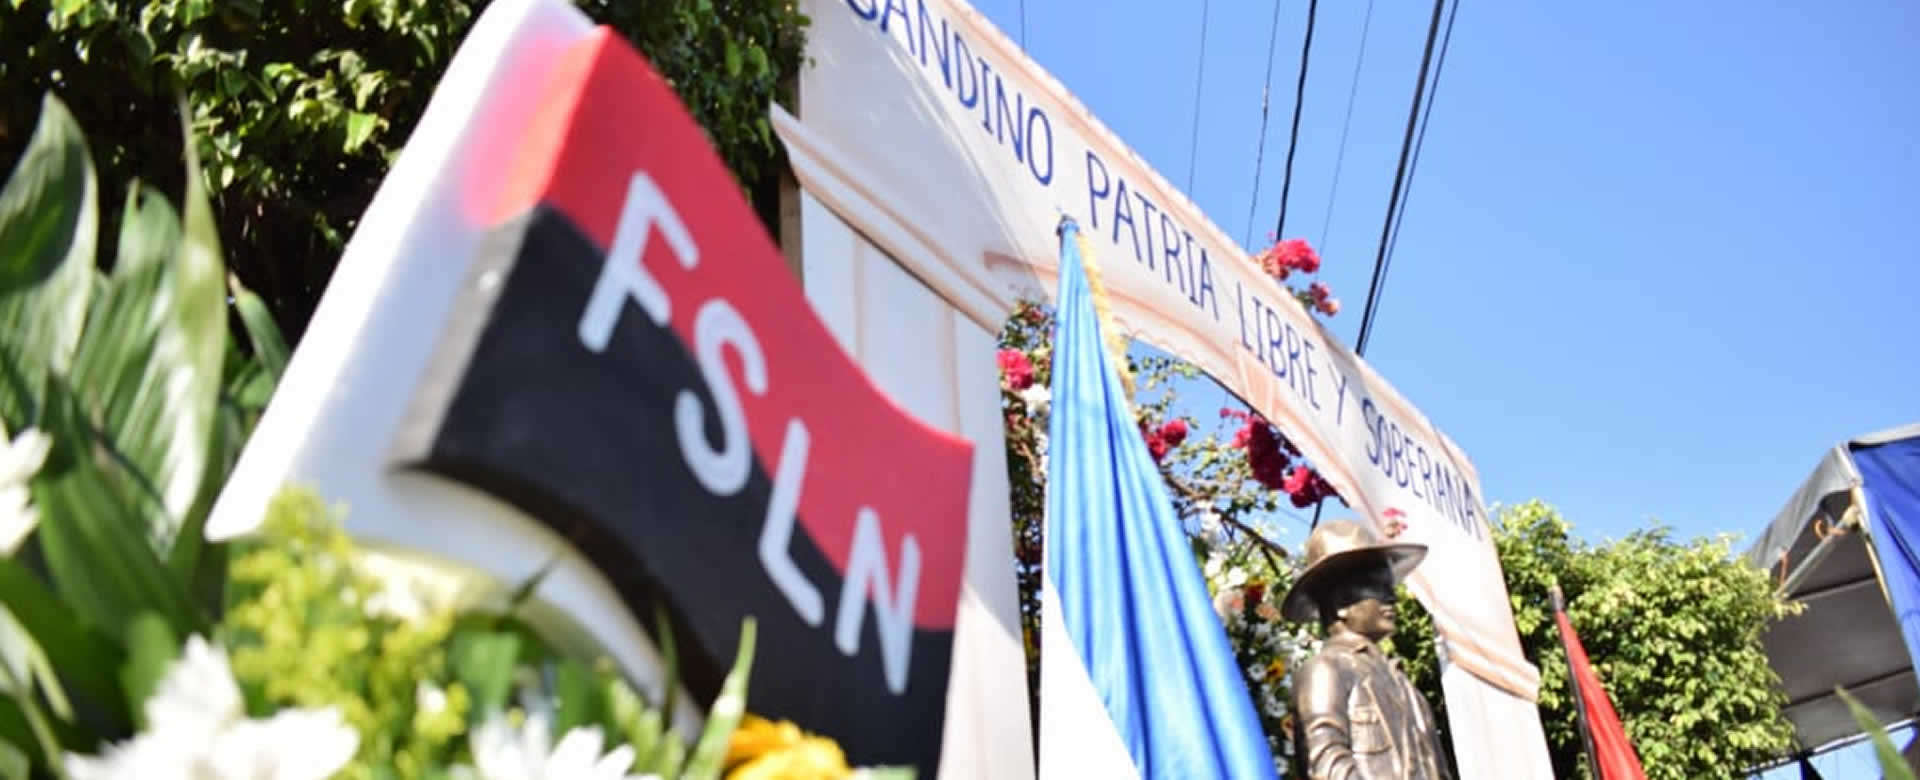 Leones rinden homenaje en el 85 aniversario del paso a la inmortalidad del General Sandino